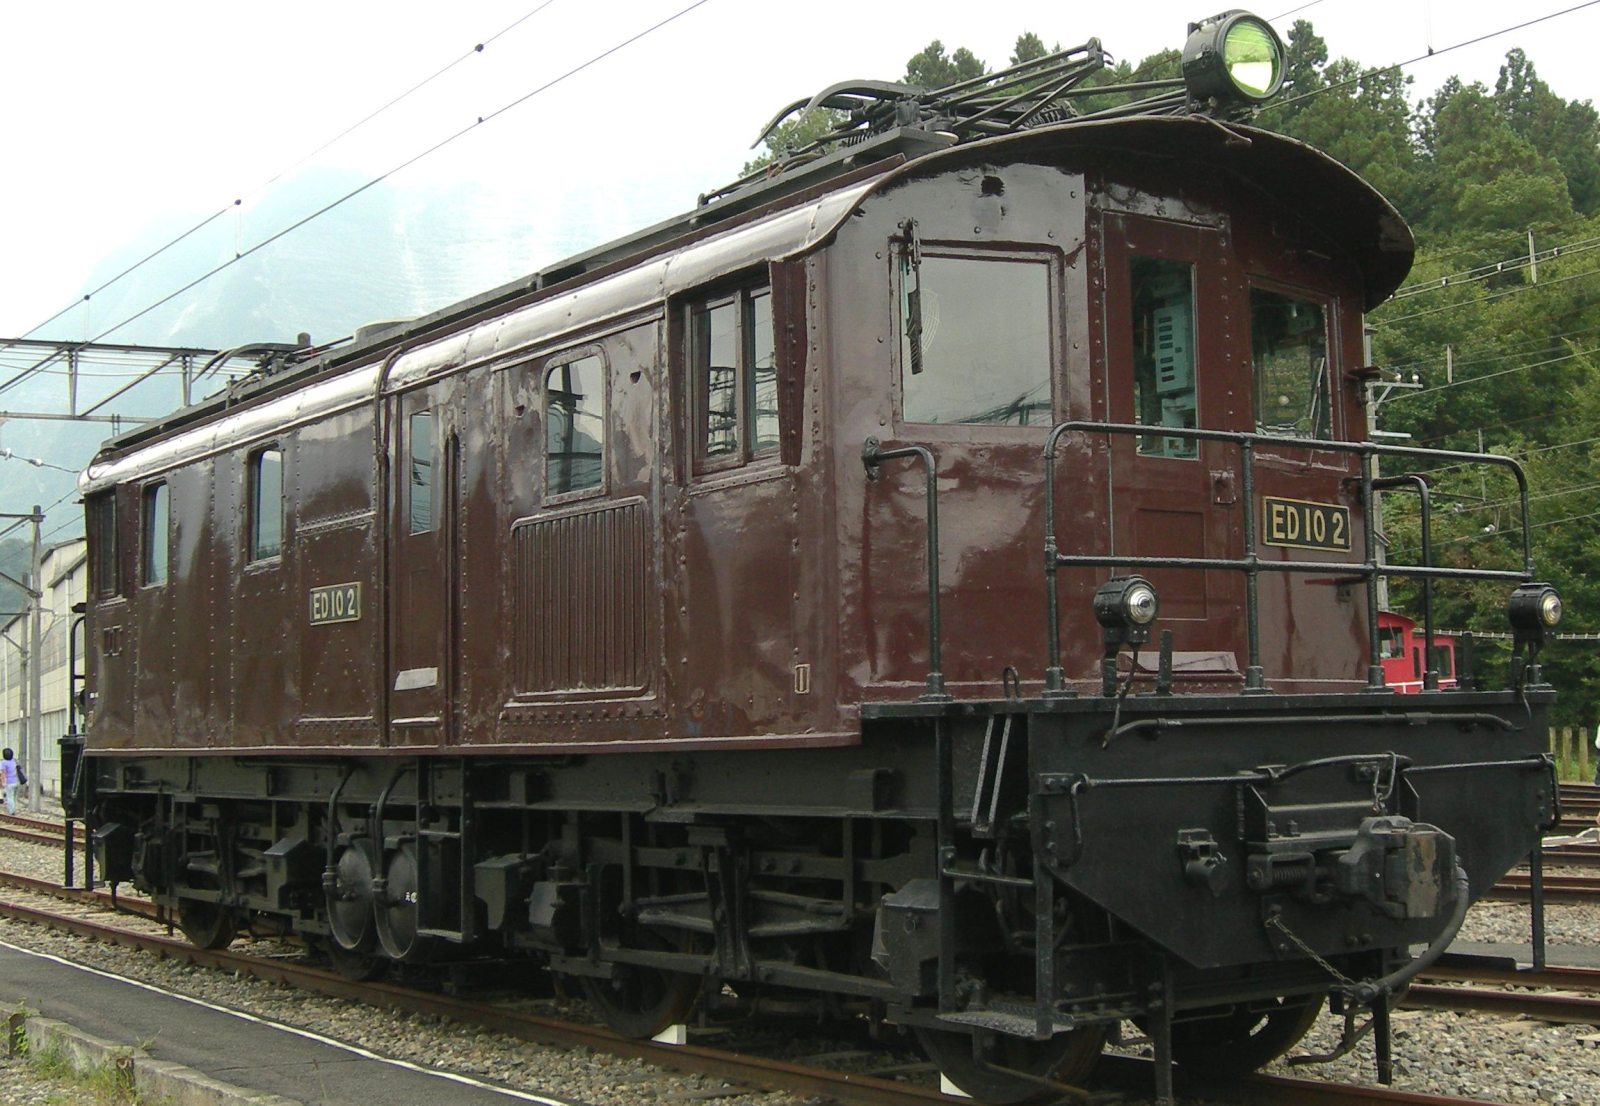 ED10 2, actually Seibu E71, in October 2009 in Yokoze depot